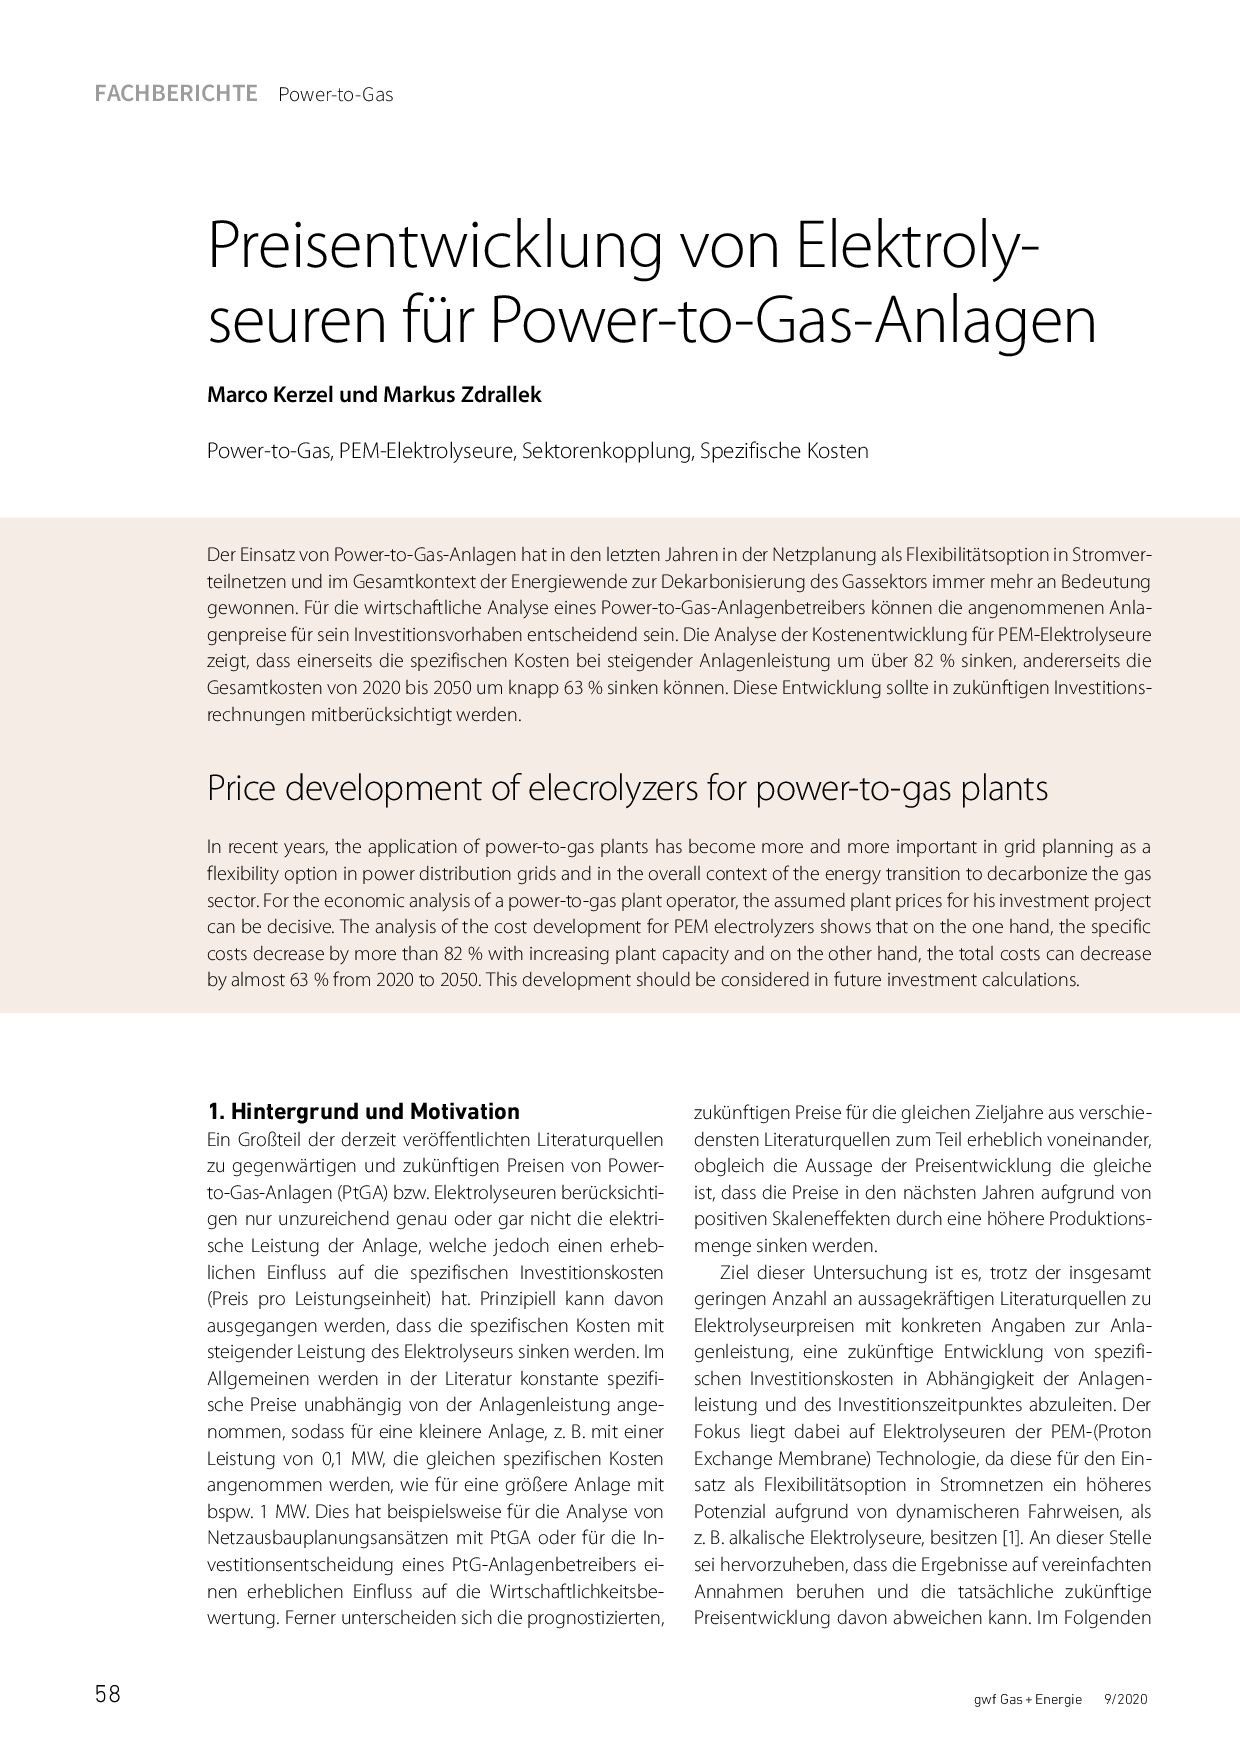 Preisentwicklung von Elektrolyseuren für Power-to-Gas-Anlagen